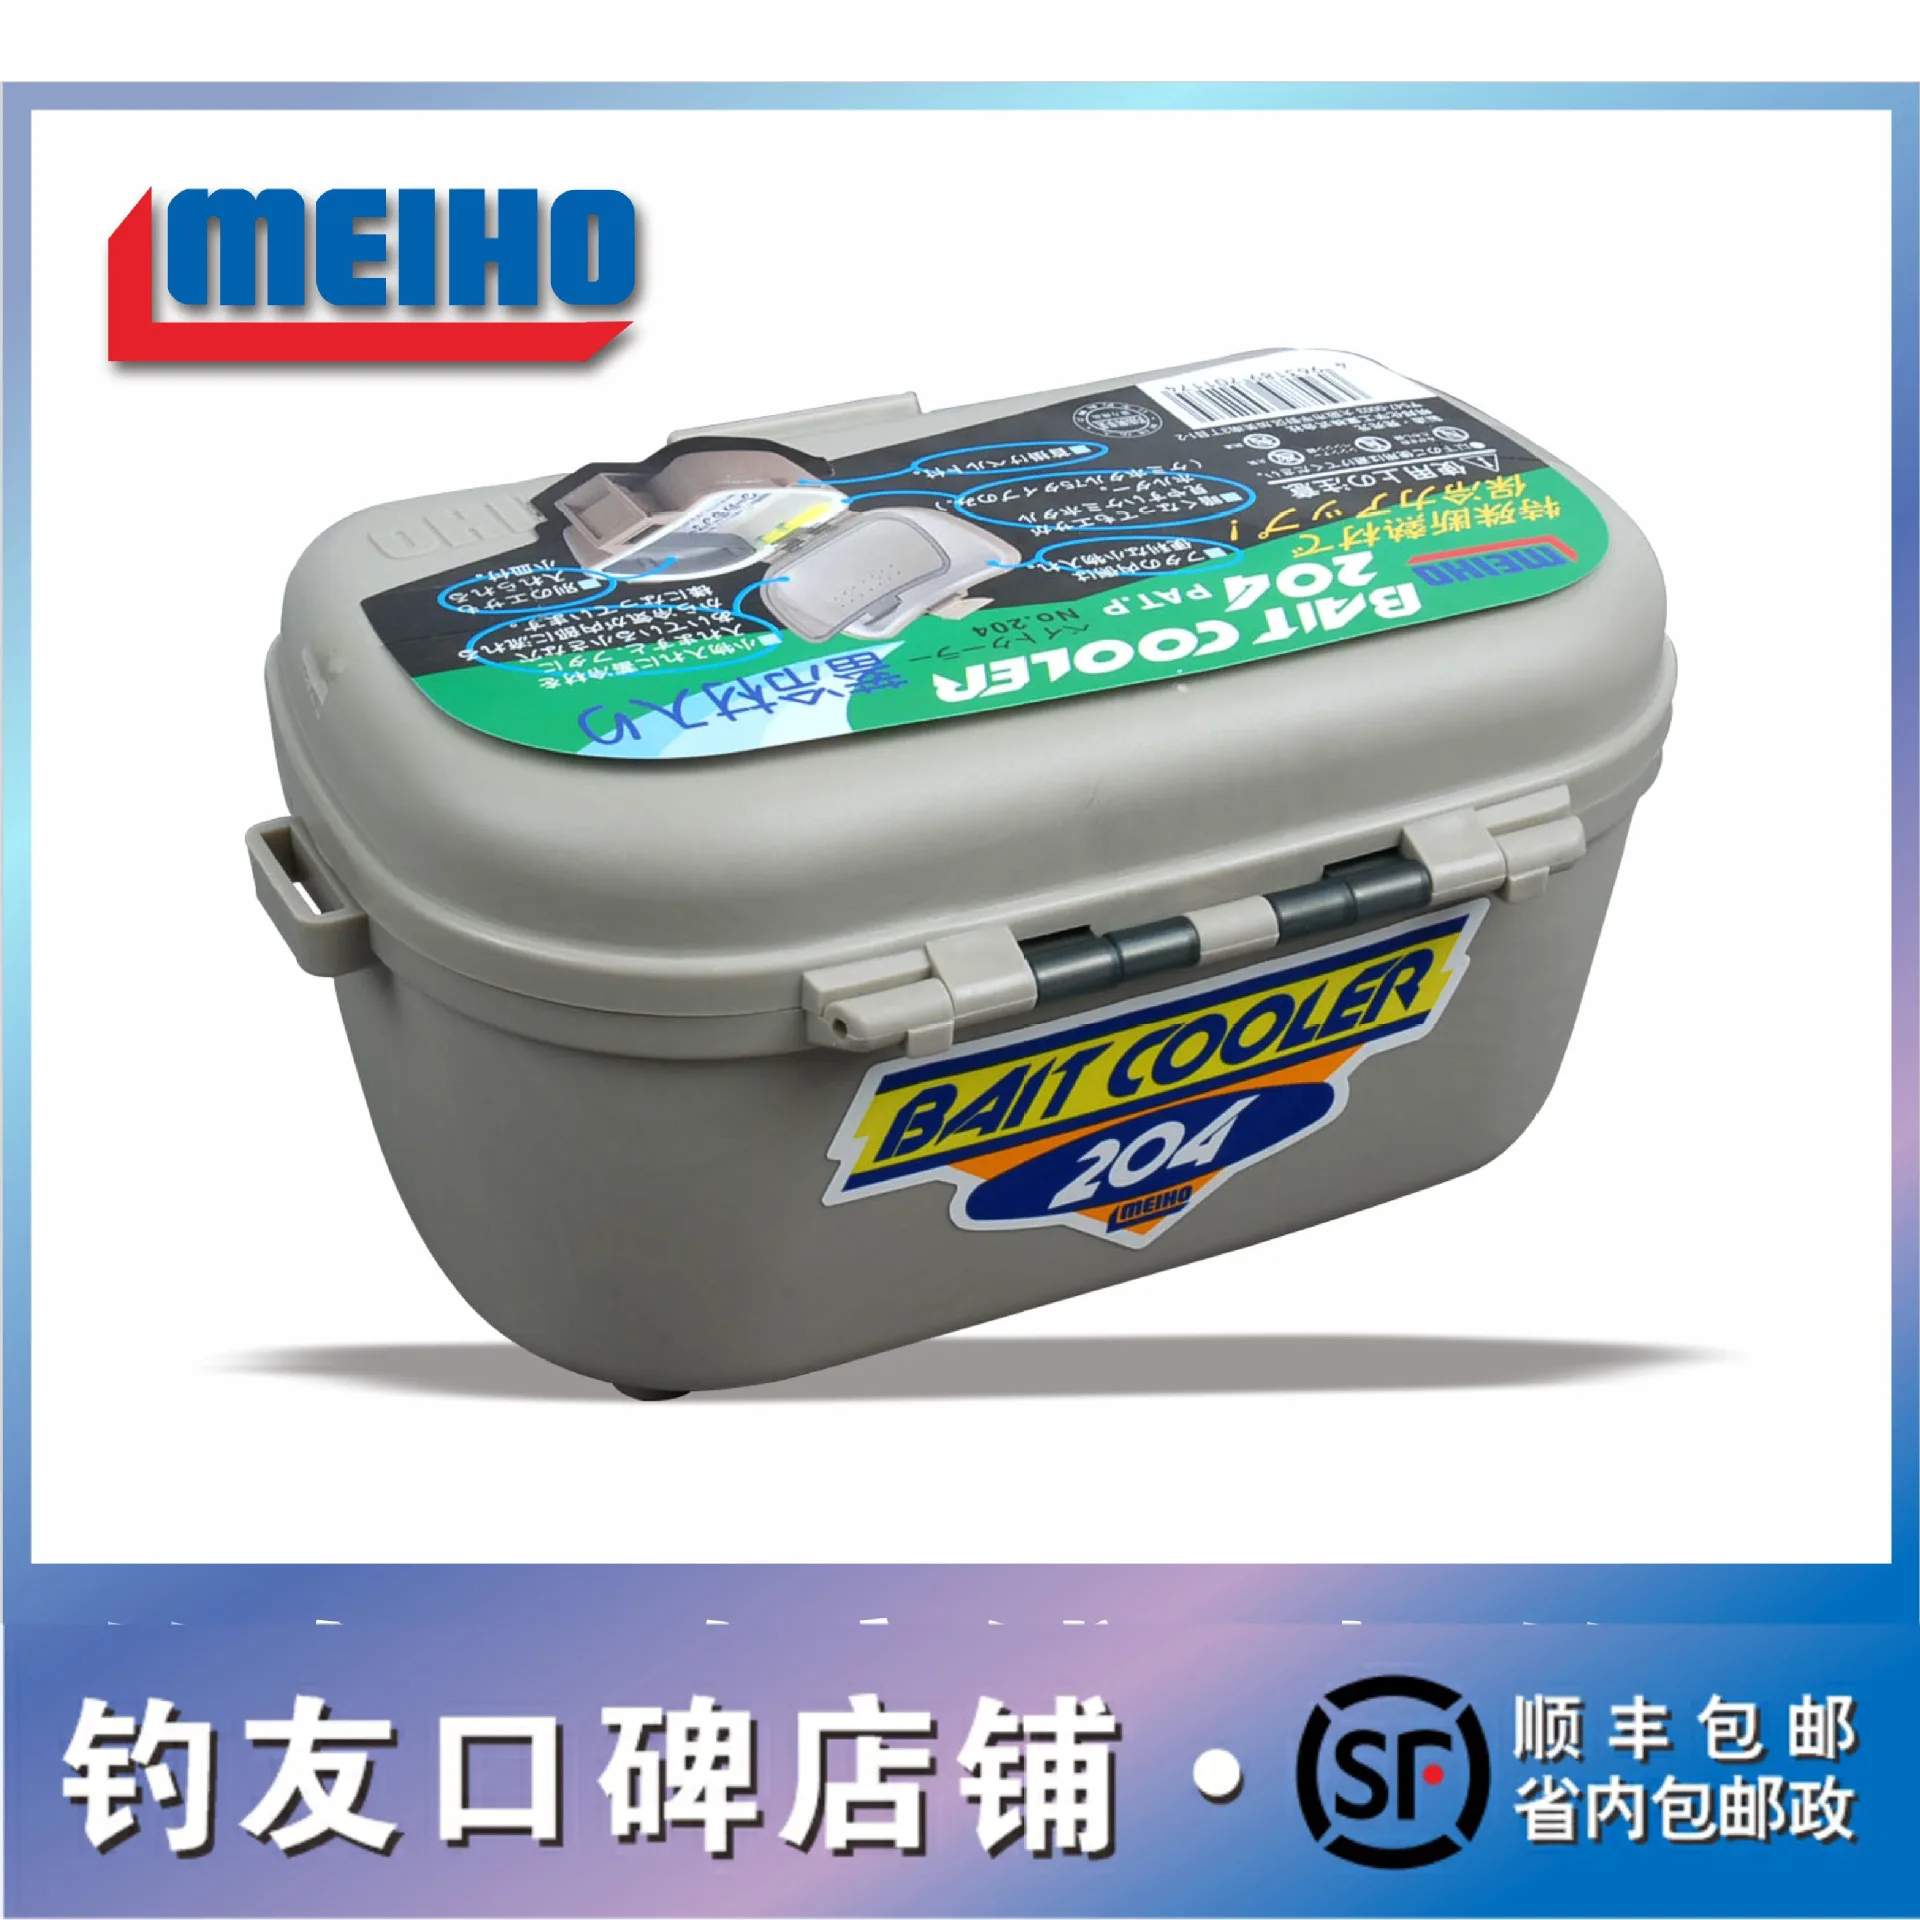 100% Original Japan MEIHO 204/203 Frozen Bait Box Heat